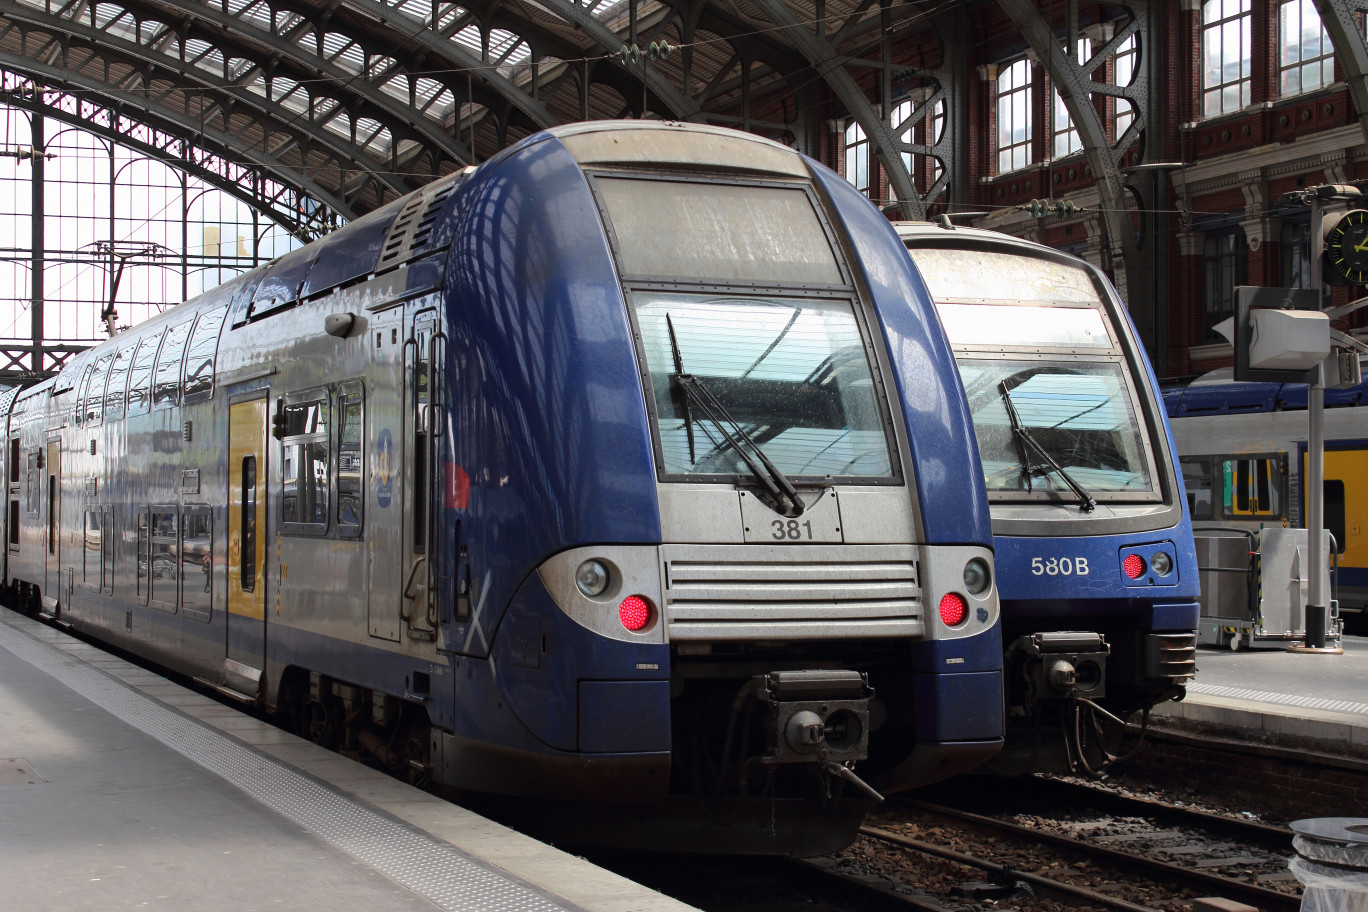 Les performances du chemin de fer diffèrent d’une région à l’autre. Si la proportion des trains partis et arrivés à l’heure excède 86% en Bretagne, elle ne dépasse pas 79% dans les Hauts-de-France. © Aygul Bulté